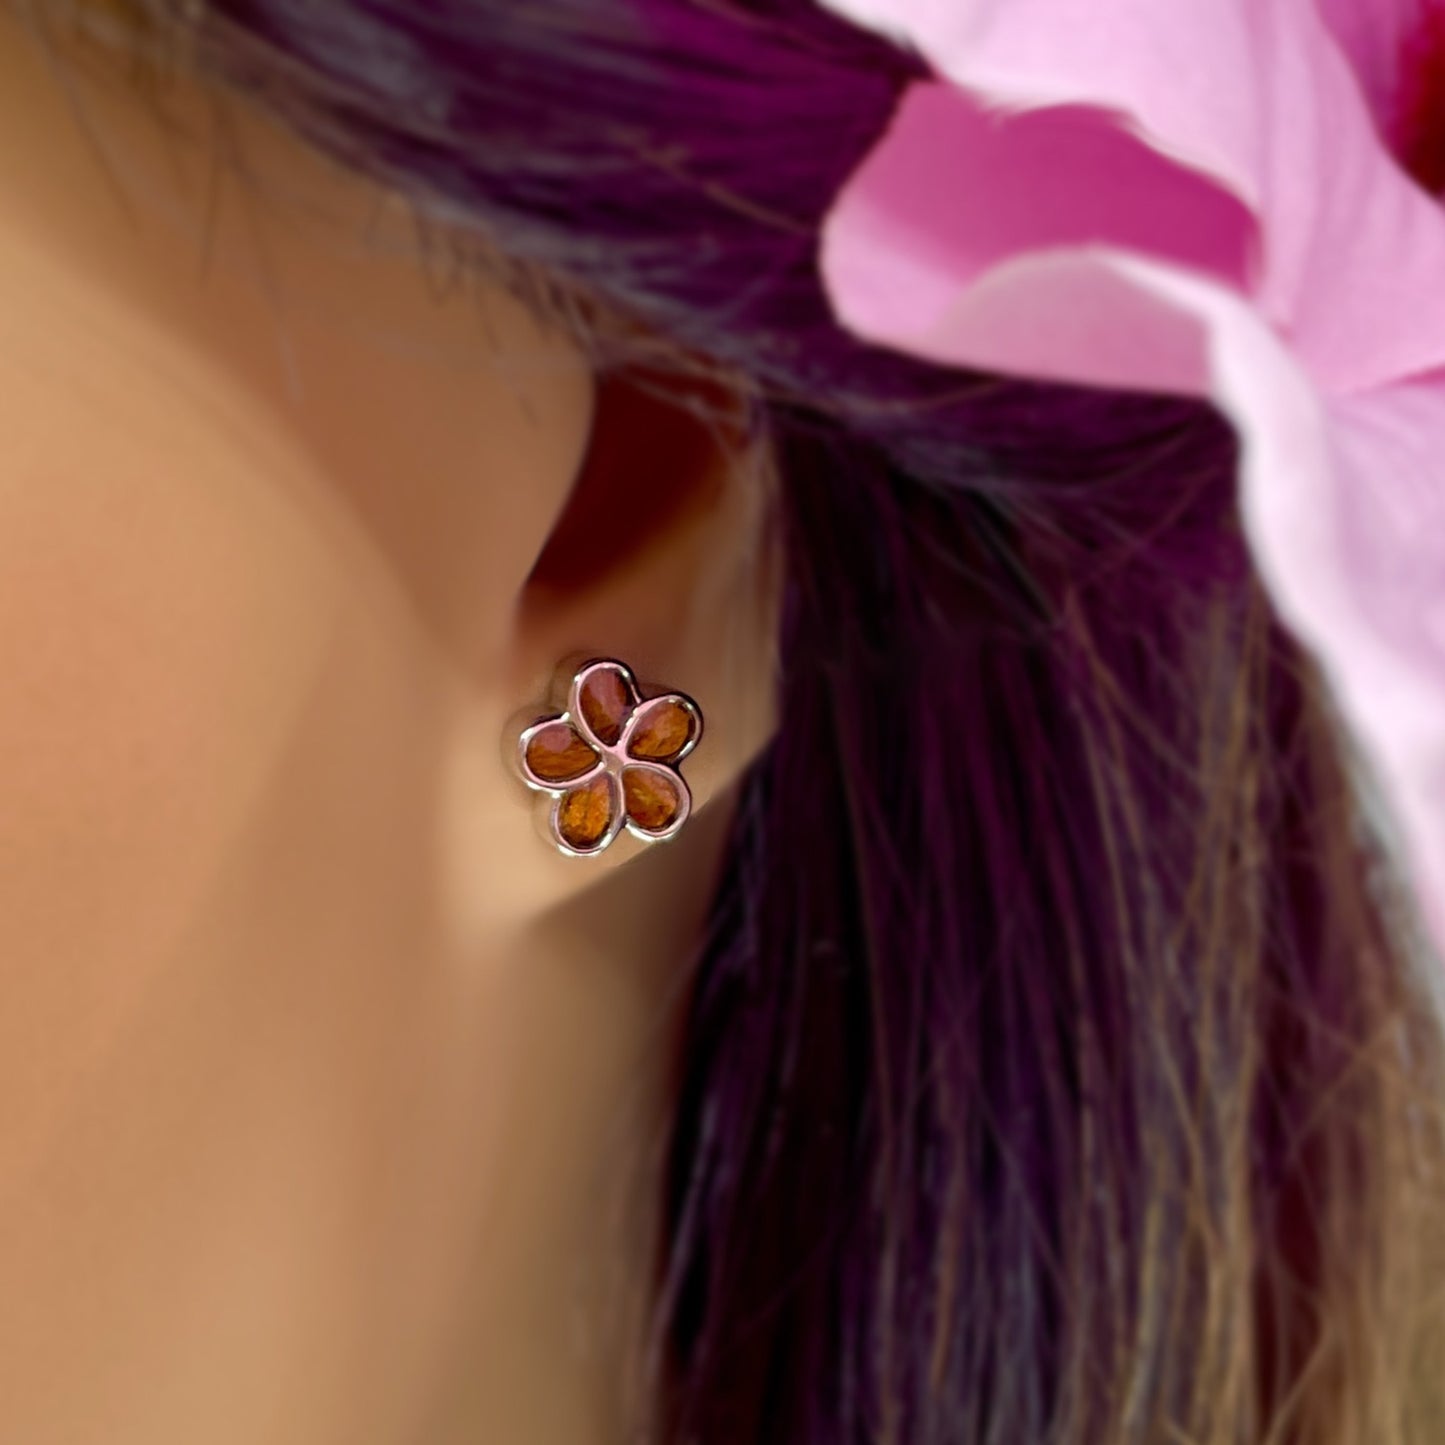 Koa Button Earring in Flower Style